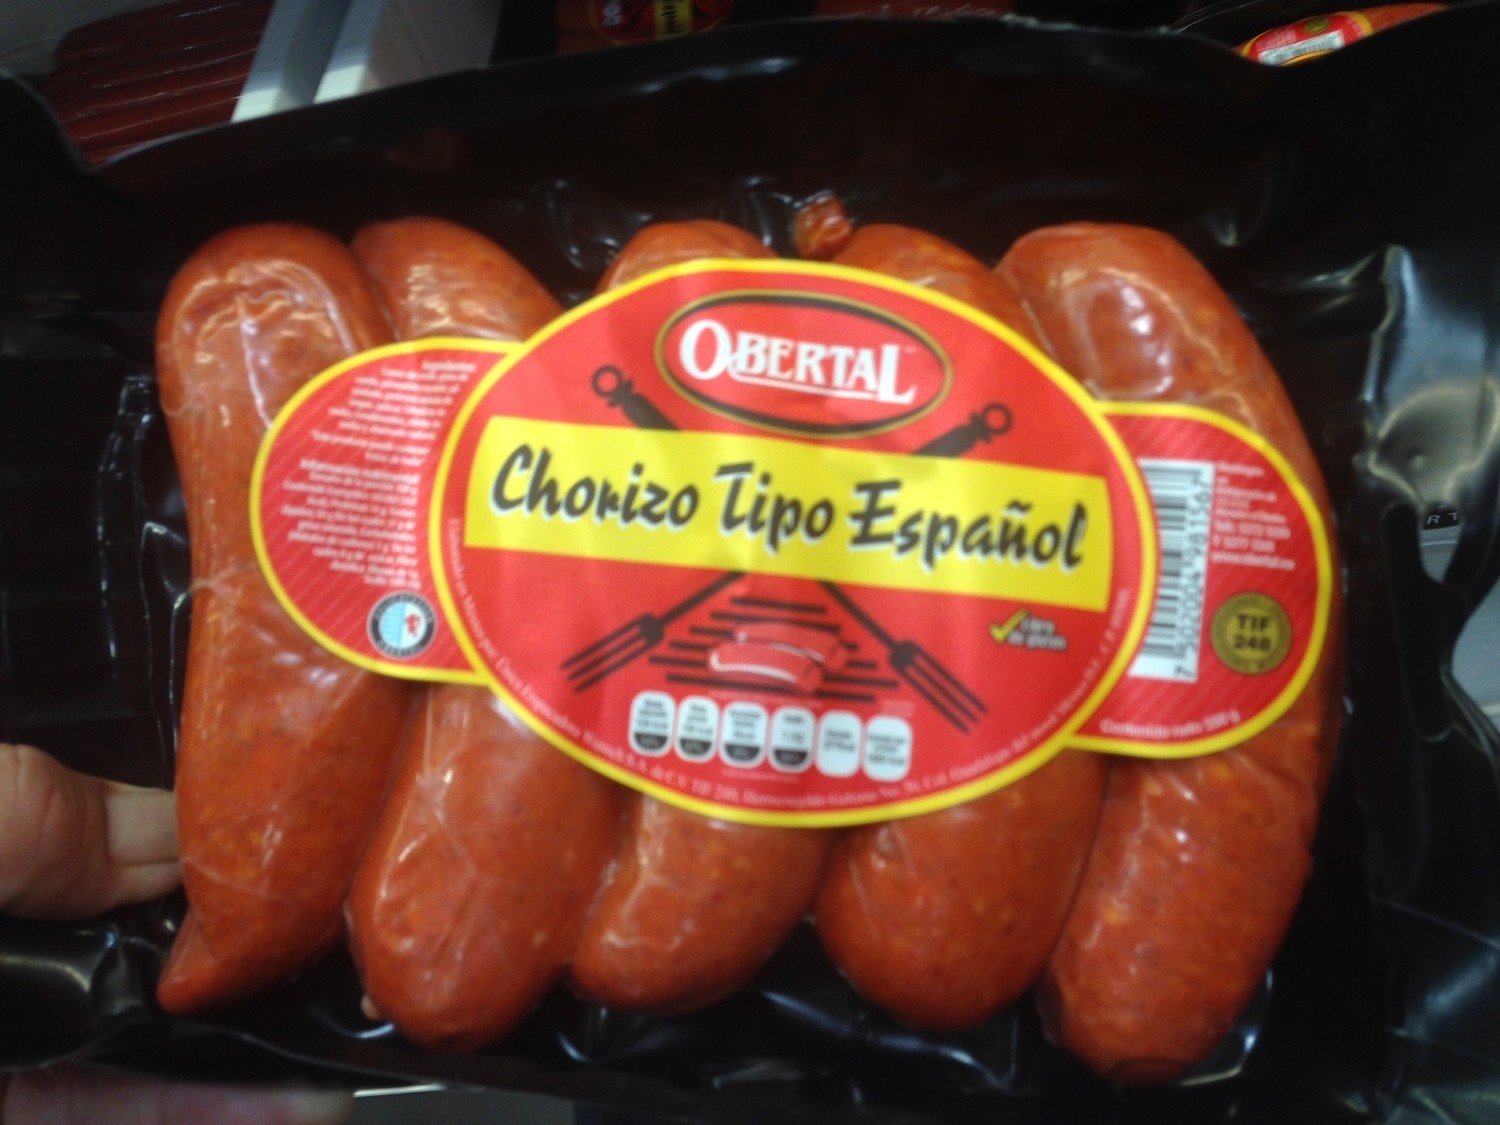 Obertal Chorizo Espanol  (deli)